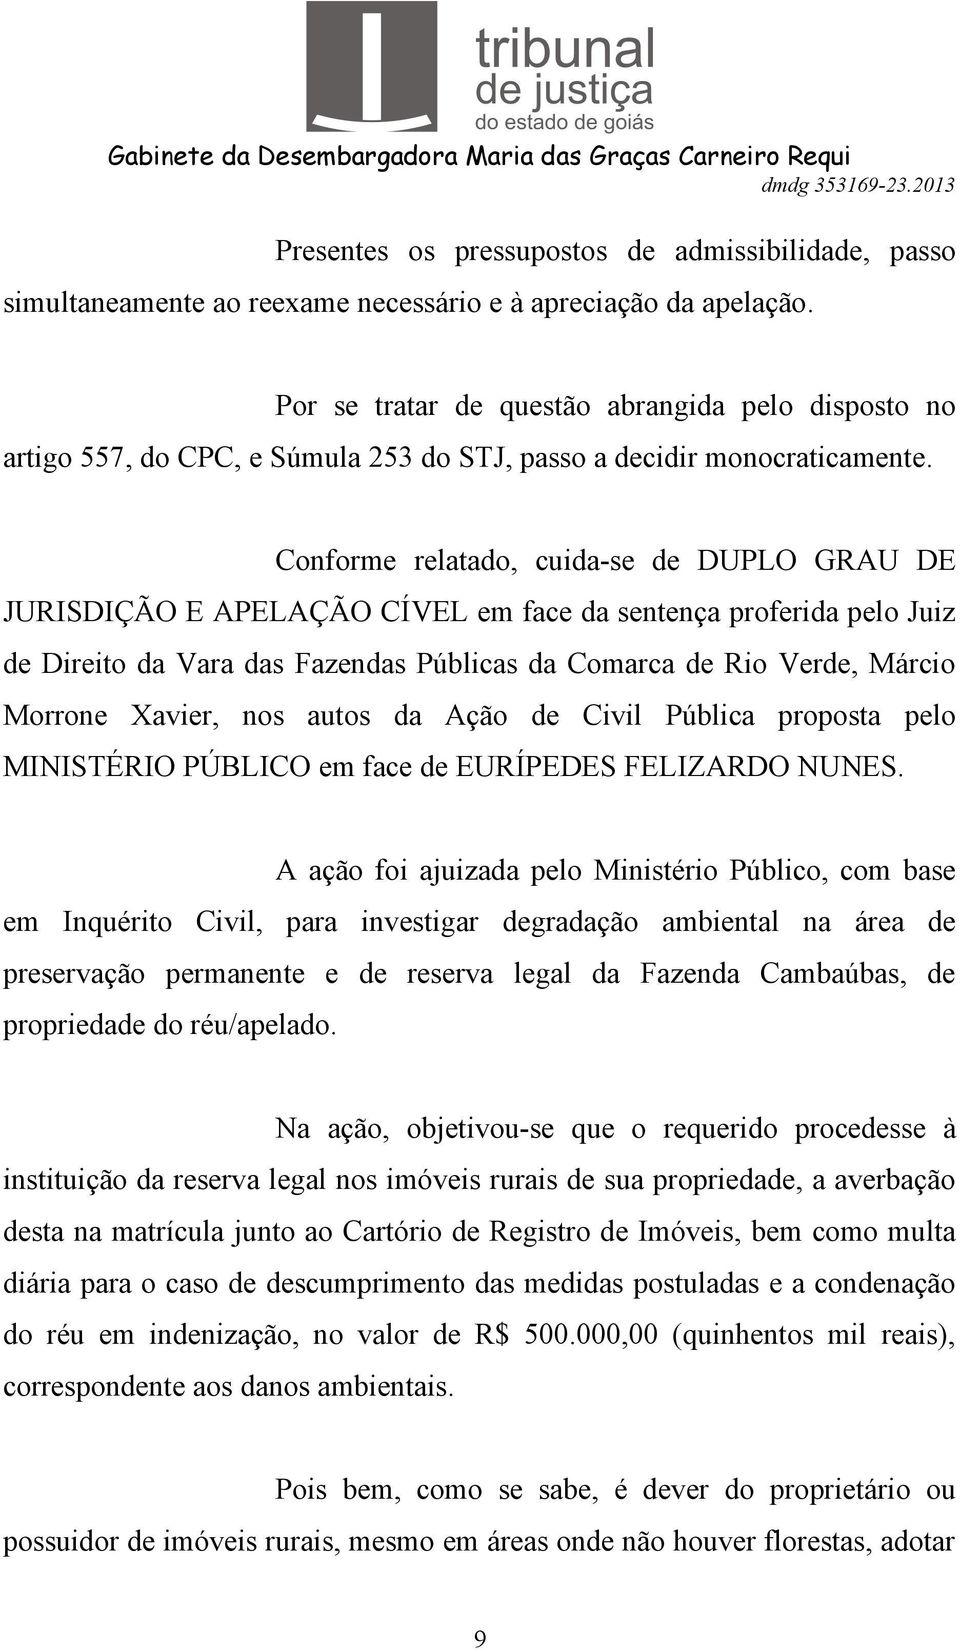 Conforme relatado, cuida-se de DUPLO GRAU DE JURISDIÇÃO E APELAÇÃO CÍVEL em face da sentença proferida pelo Juiz de Direito da Vara das Fazendas Públicas da Comarca de Rio Verde, Márcio Morrone